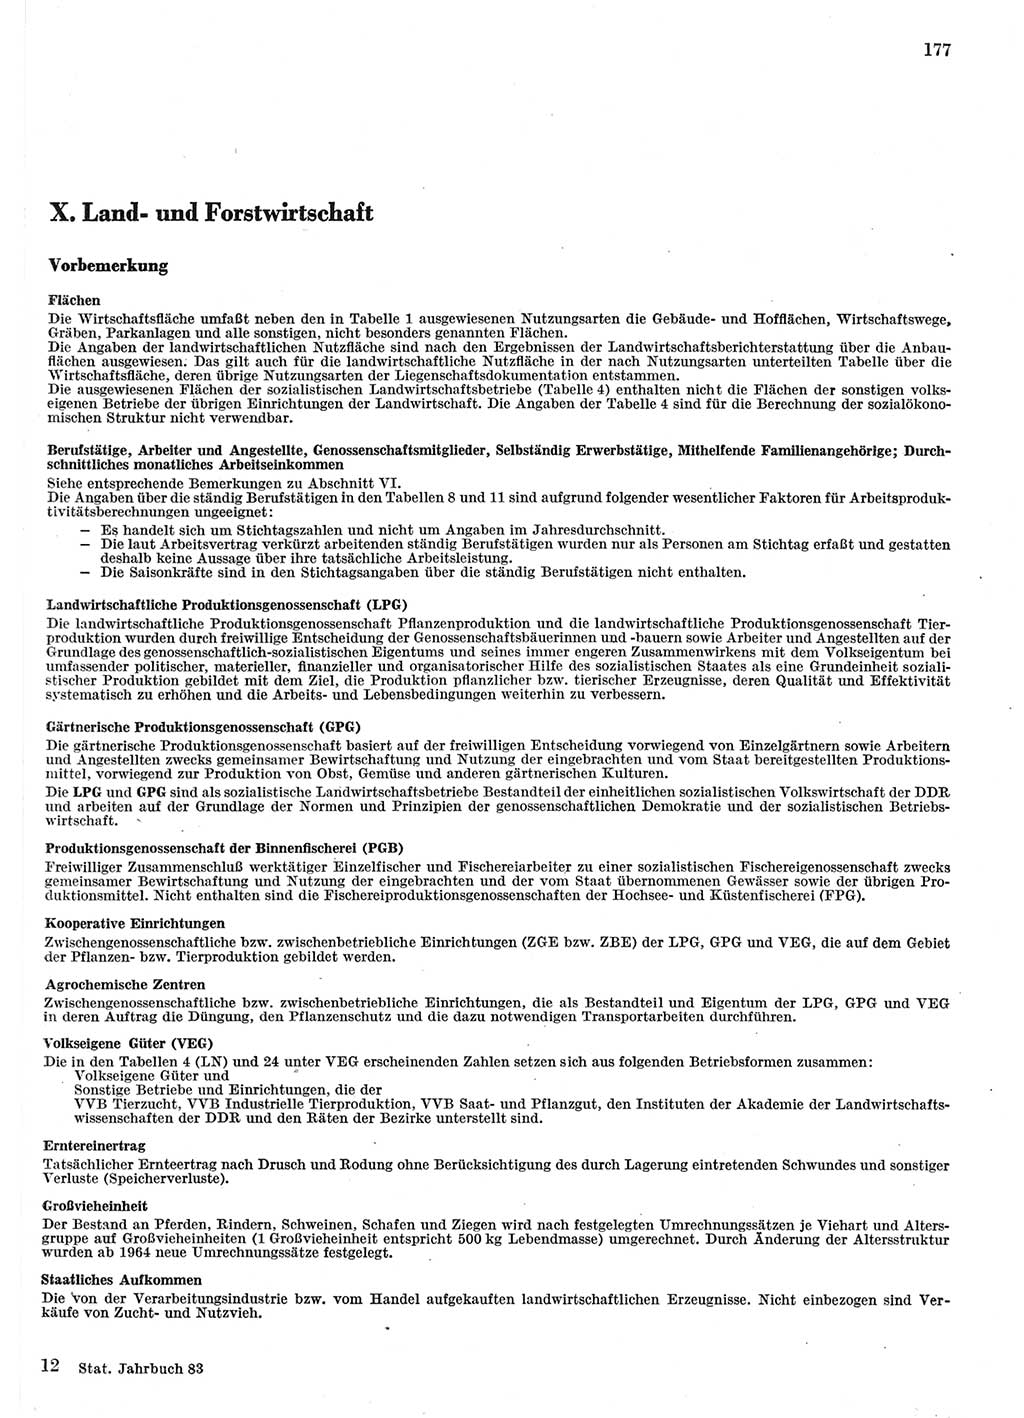 Statistisches Jahrbuch der Deutschen Demokratischen Republik (DDR) 1983, Seite 177 (Stat. Jb. DDR 1983, S. 177)